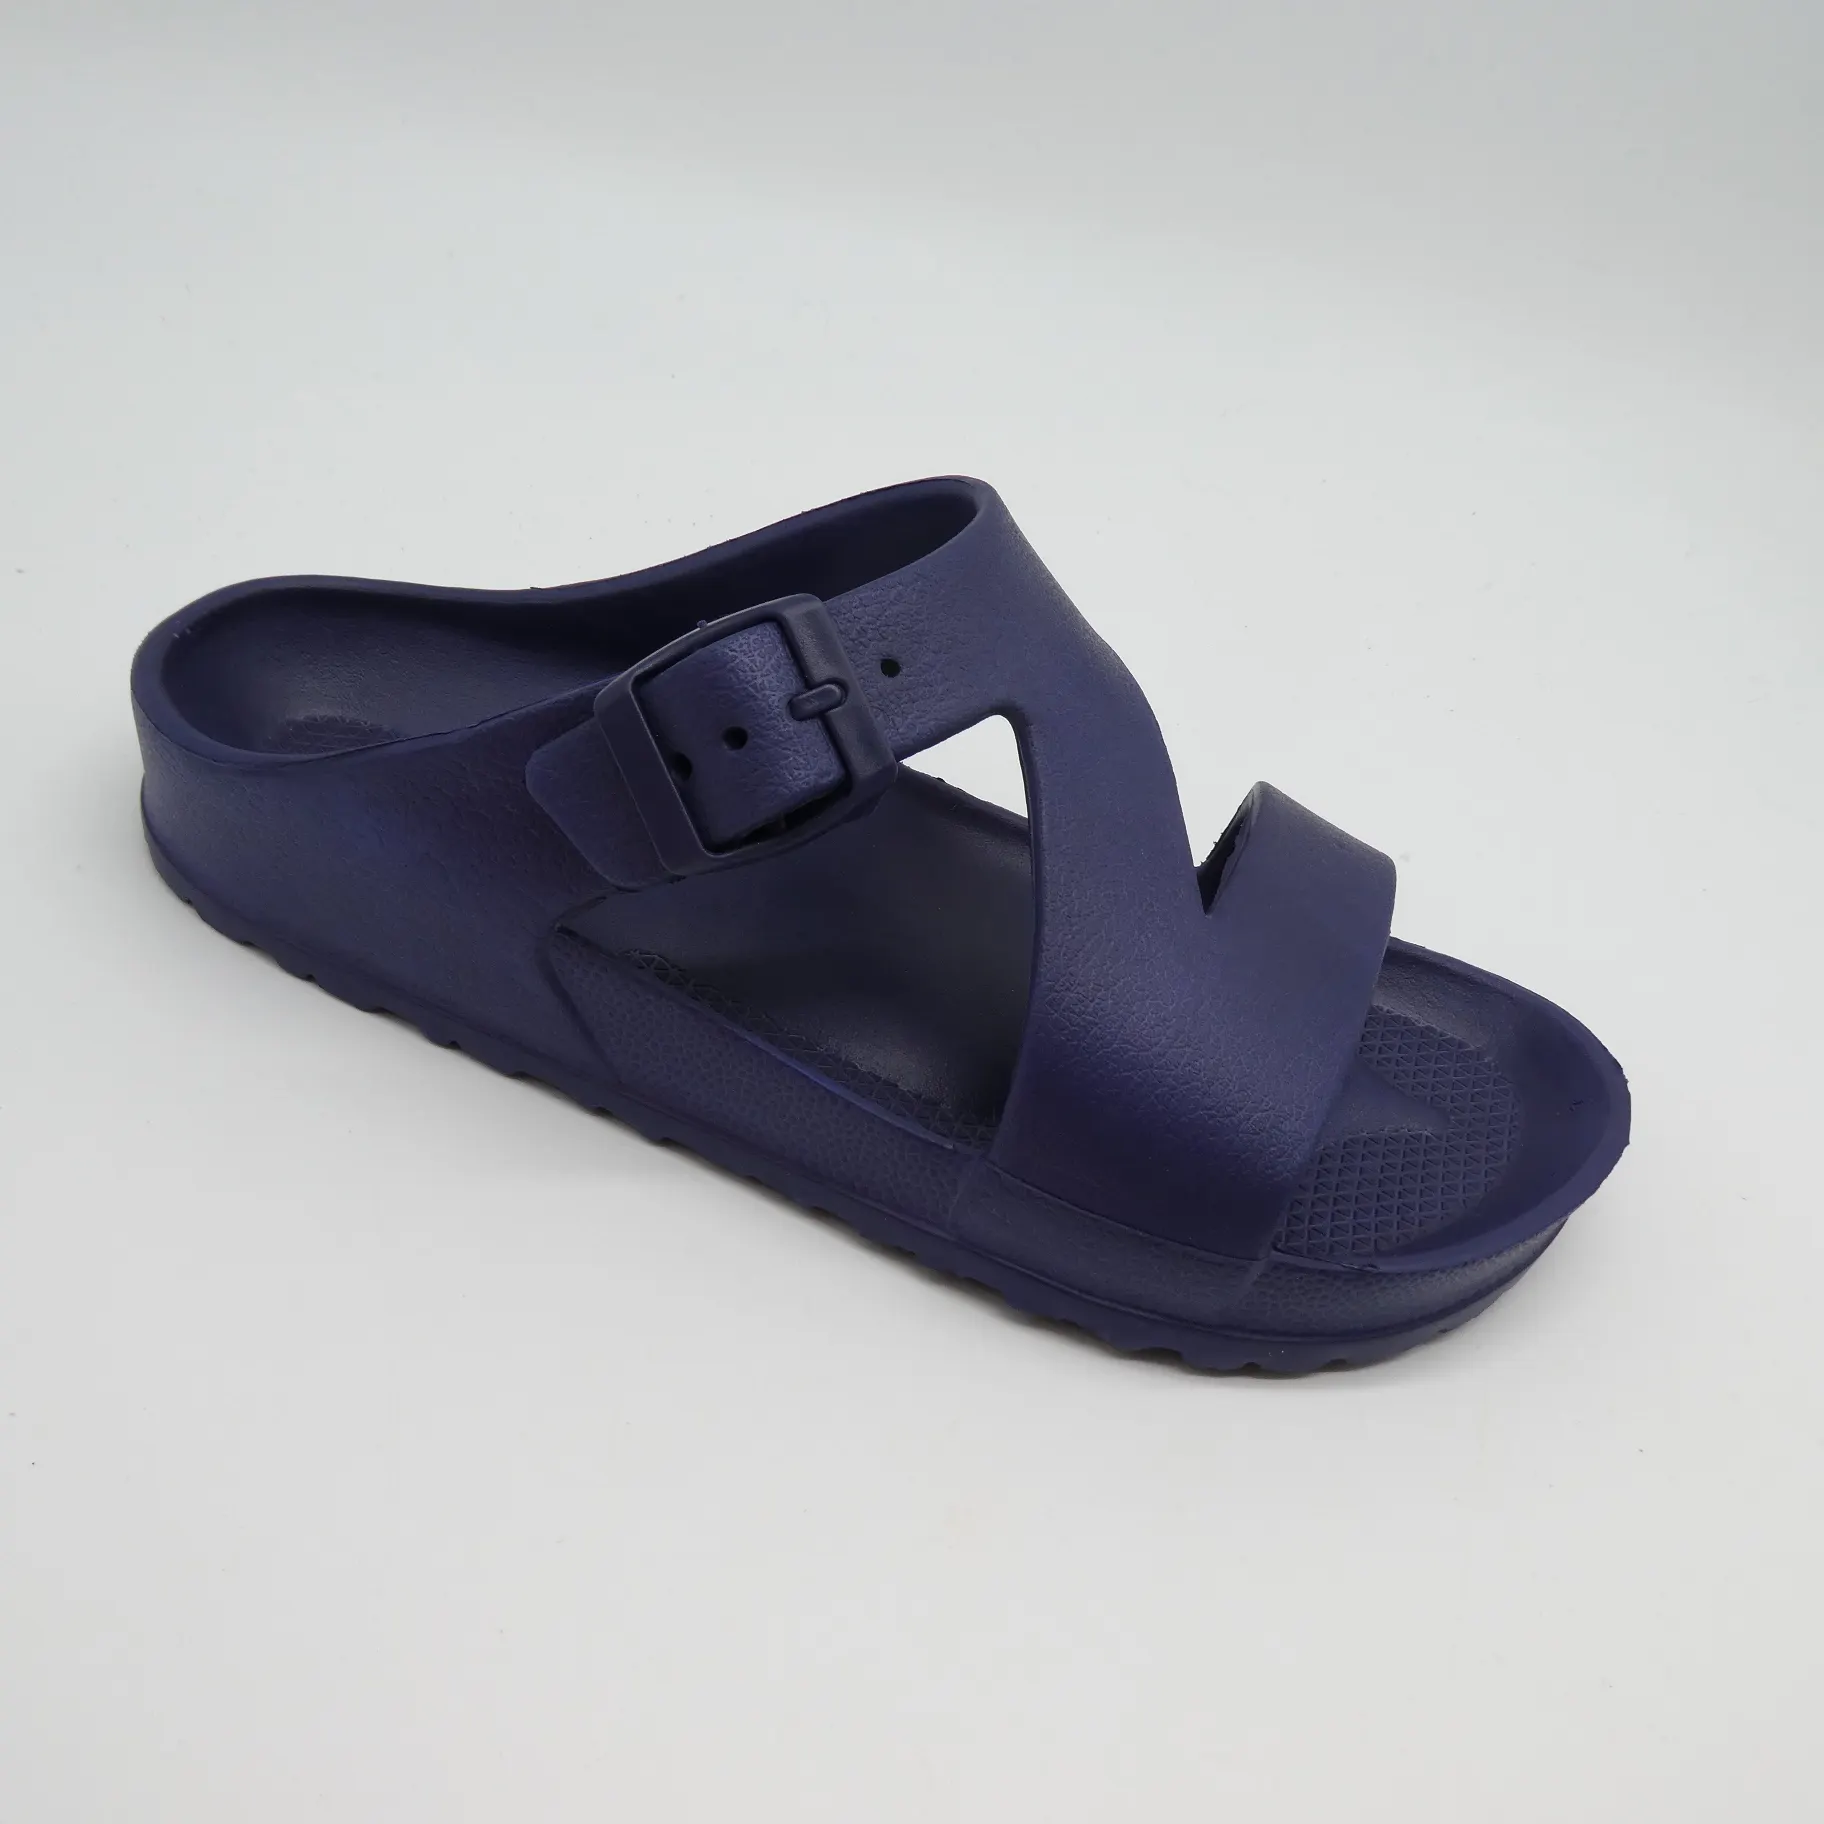 Cost effective Z-shaped upper women's indoor and outdoor EVA sandals